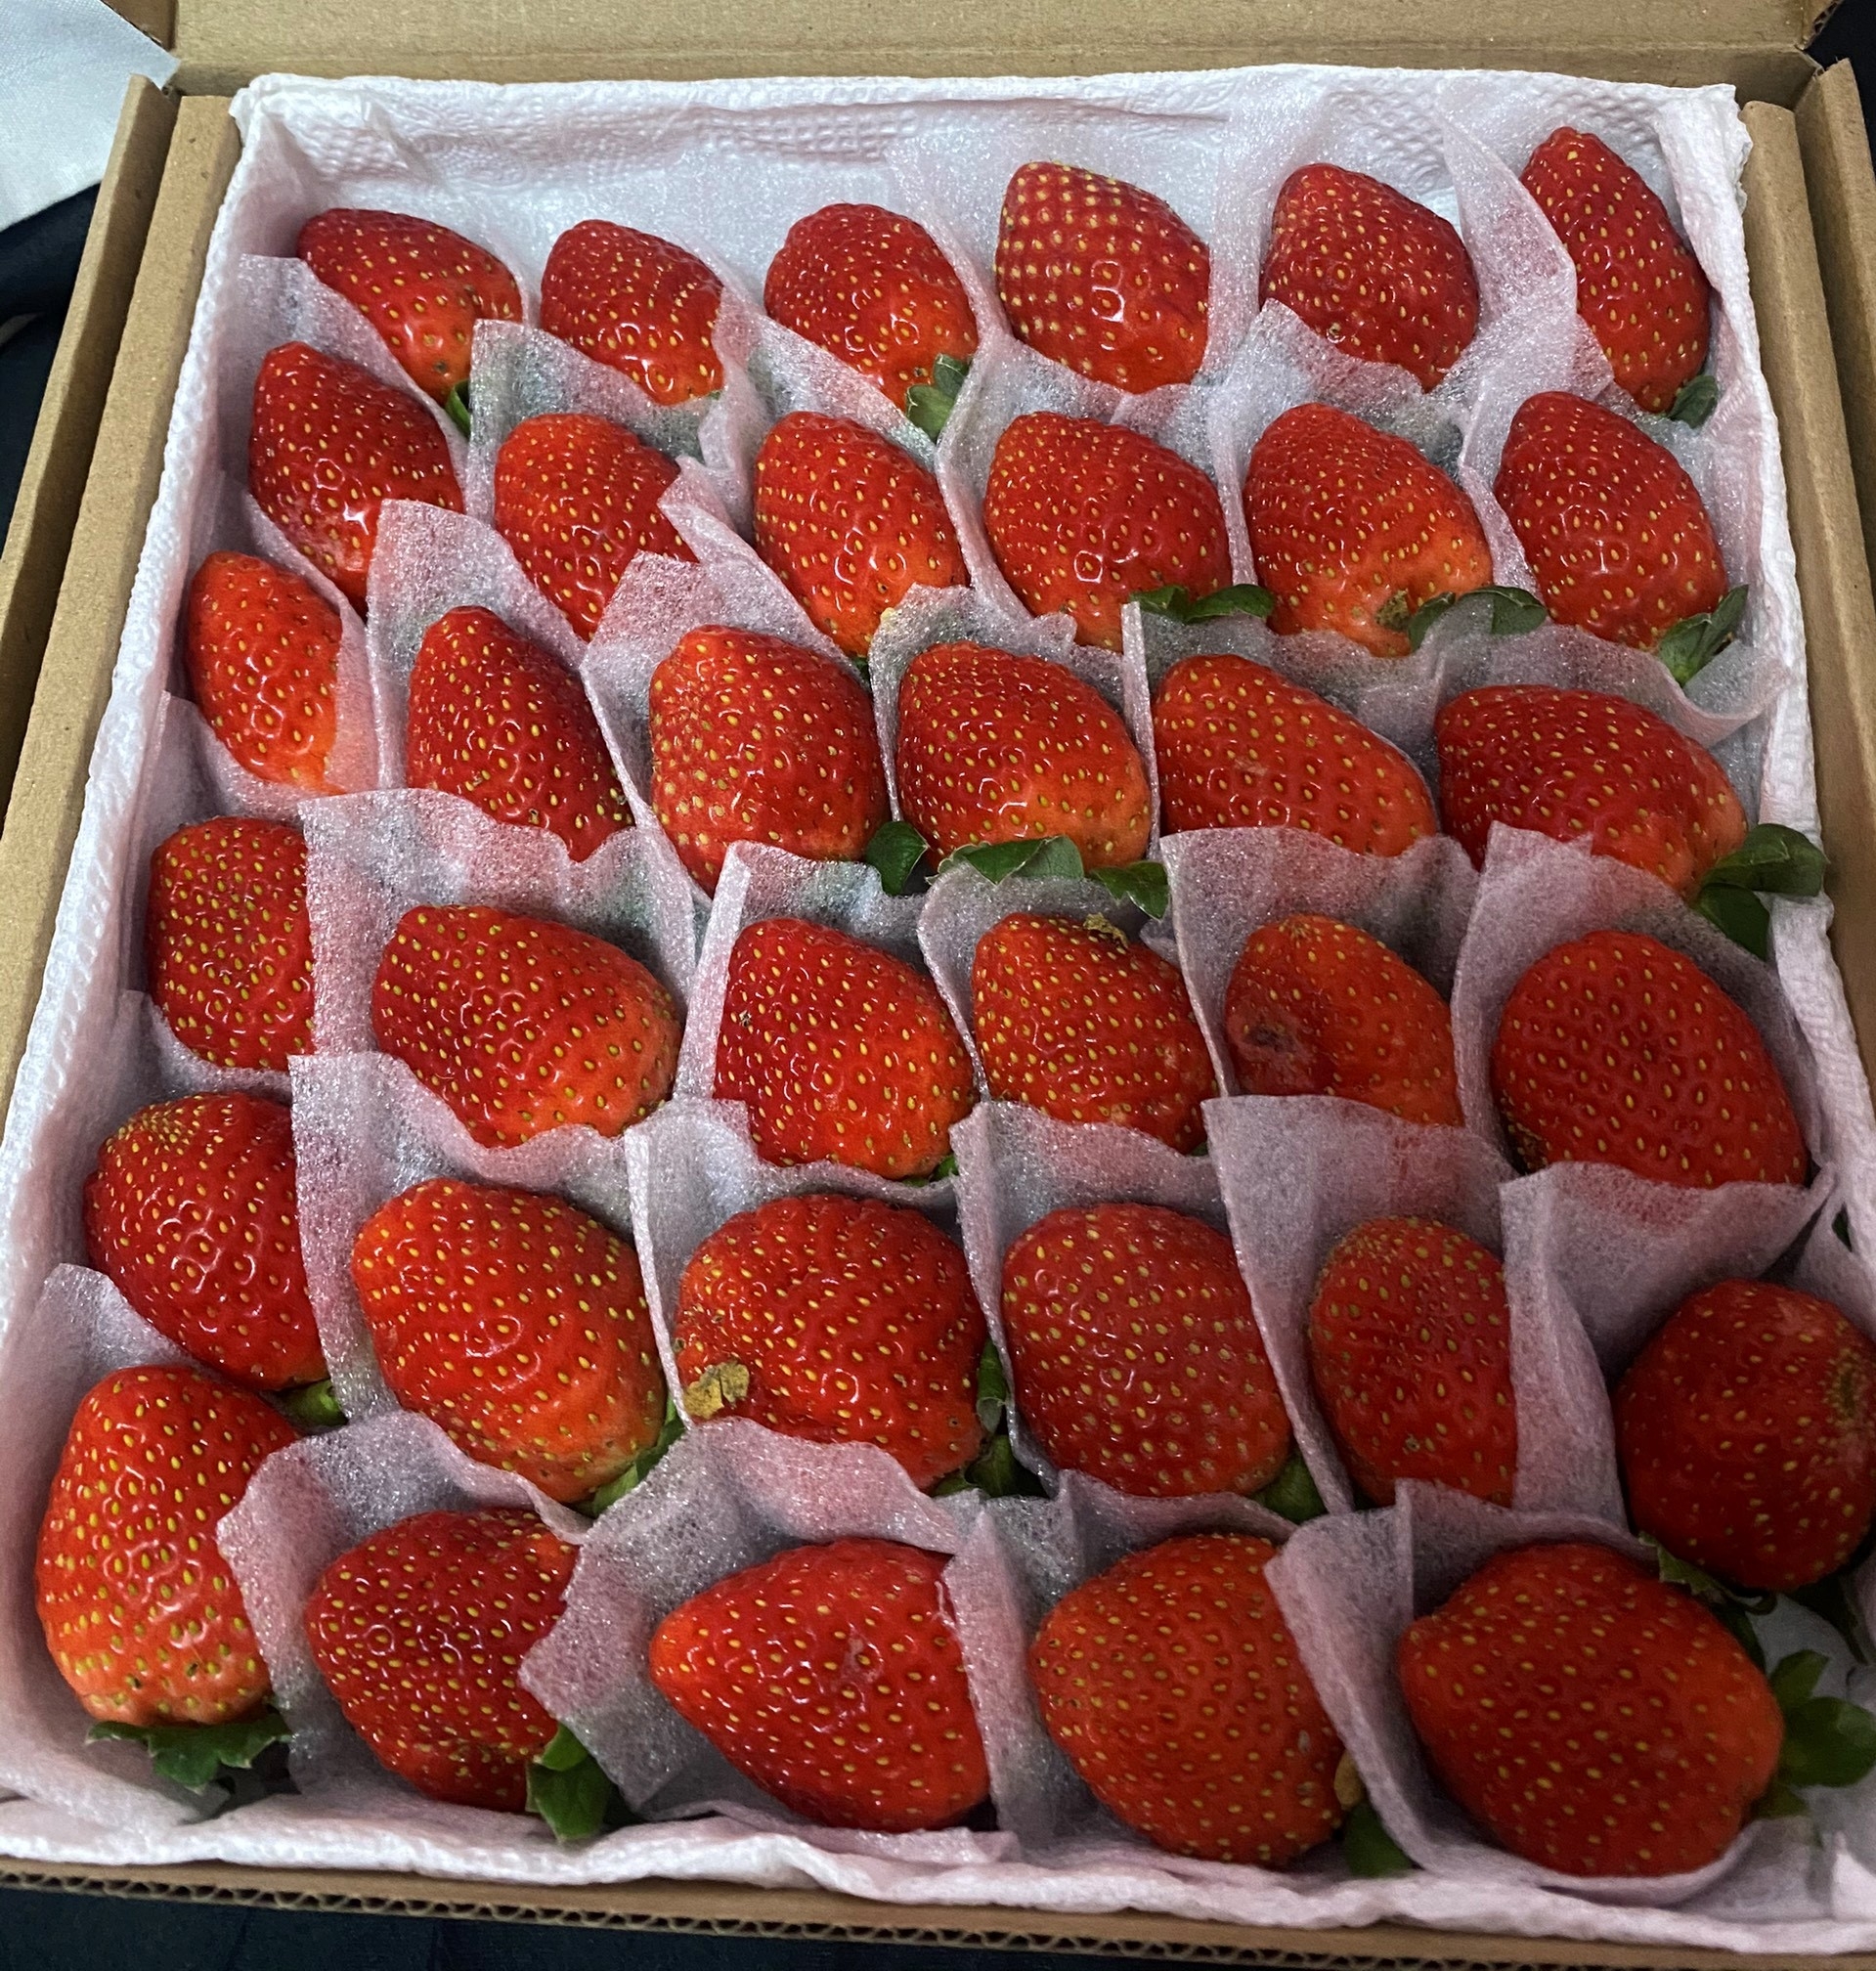 造访大叻市的游客，可以去草莓园，亲手摘草莓吃或买回来做礼物送人。